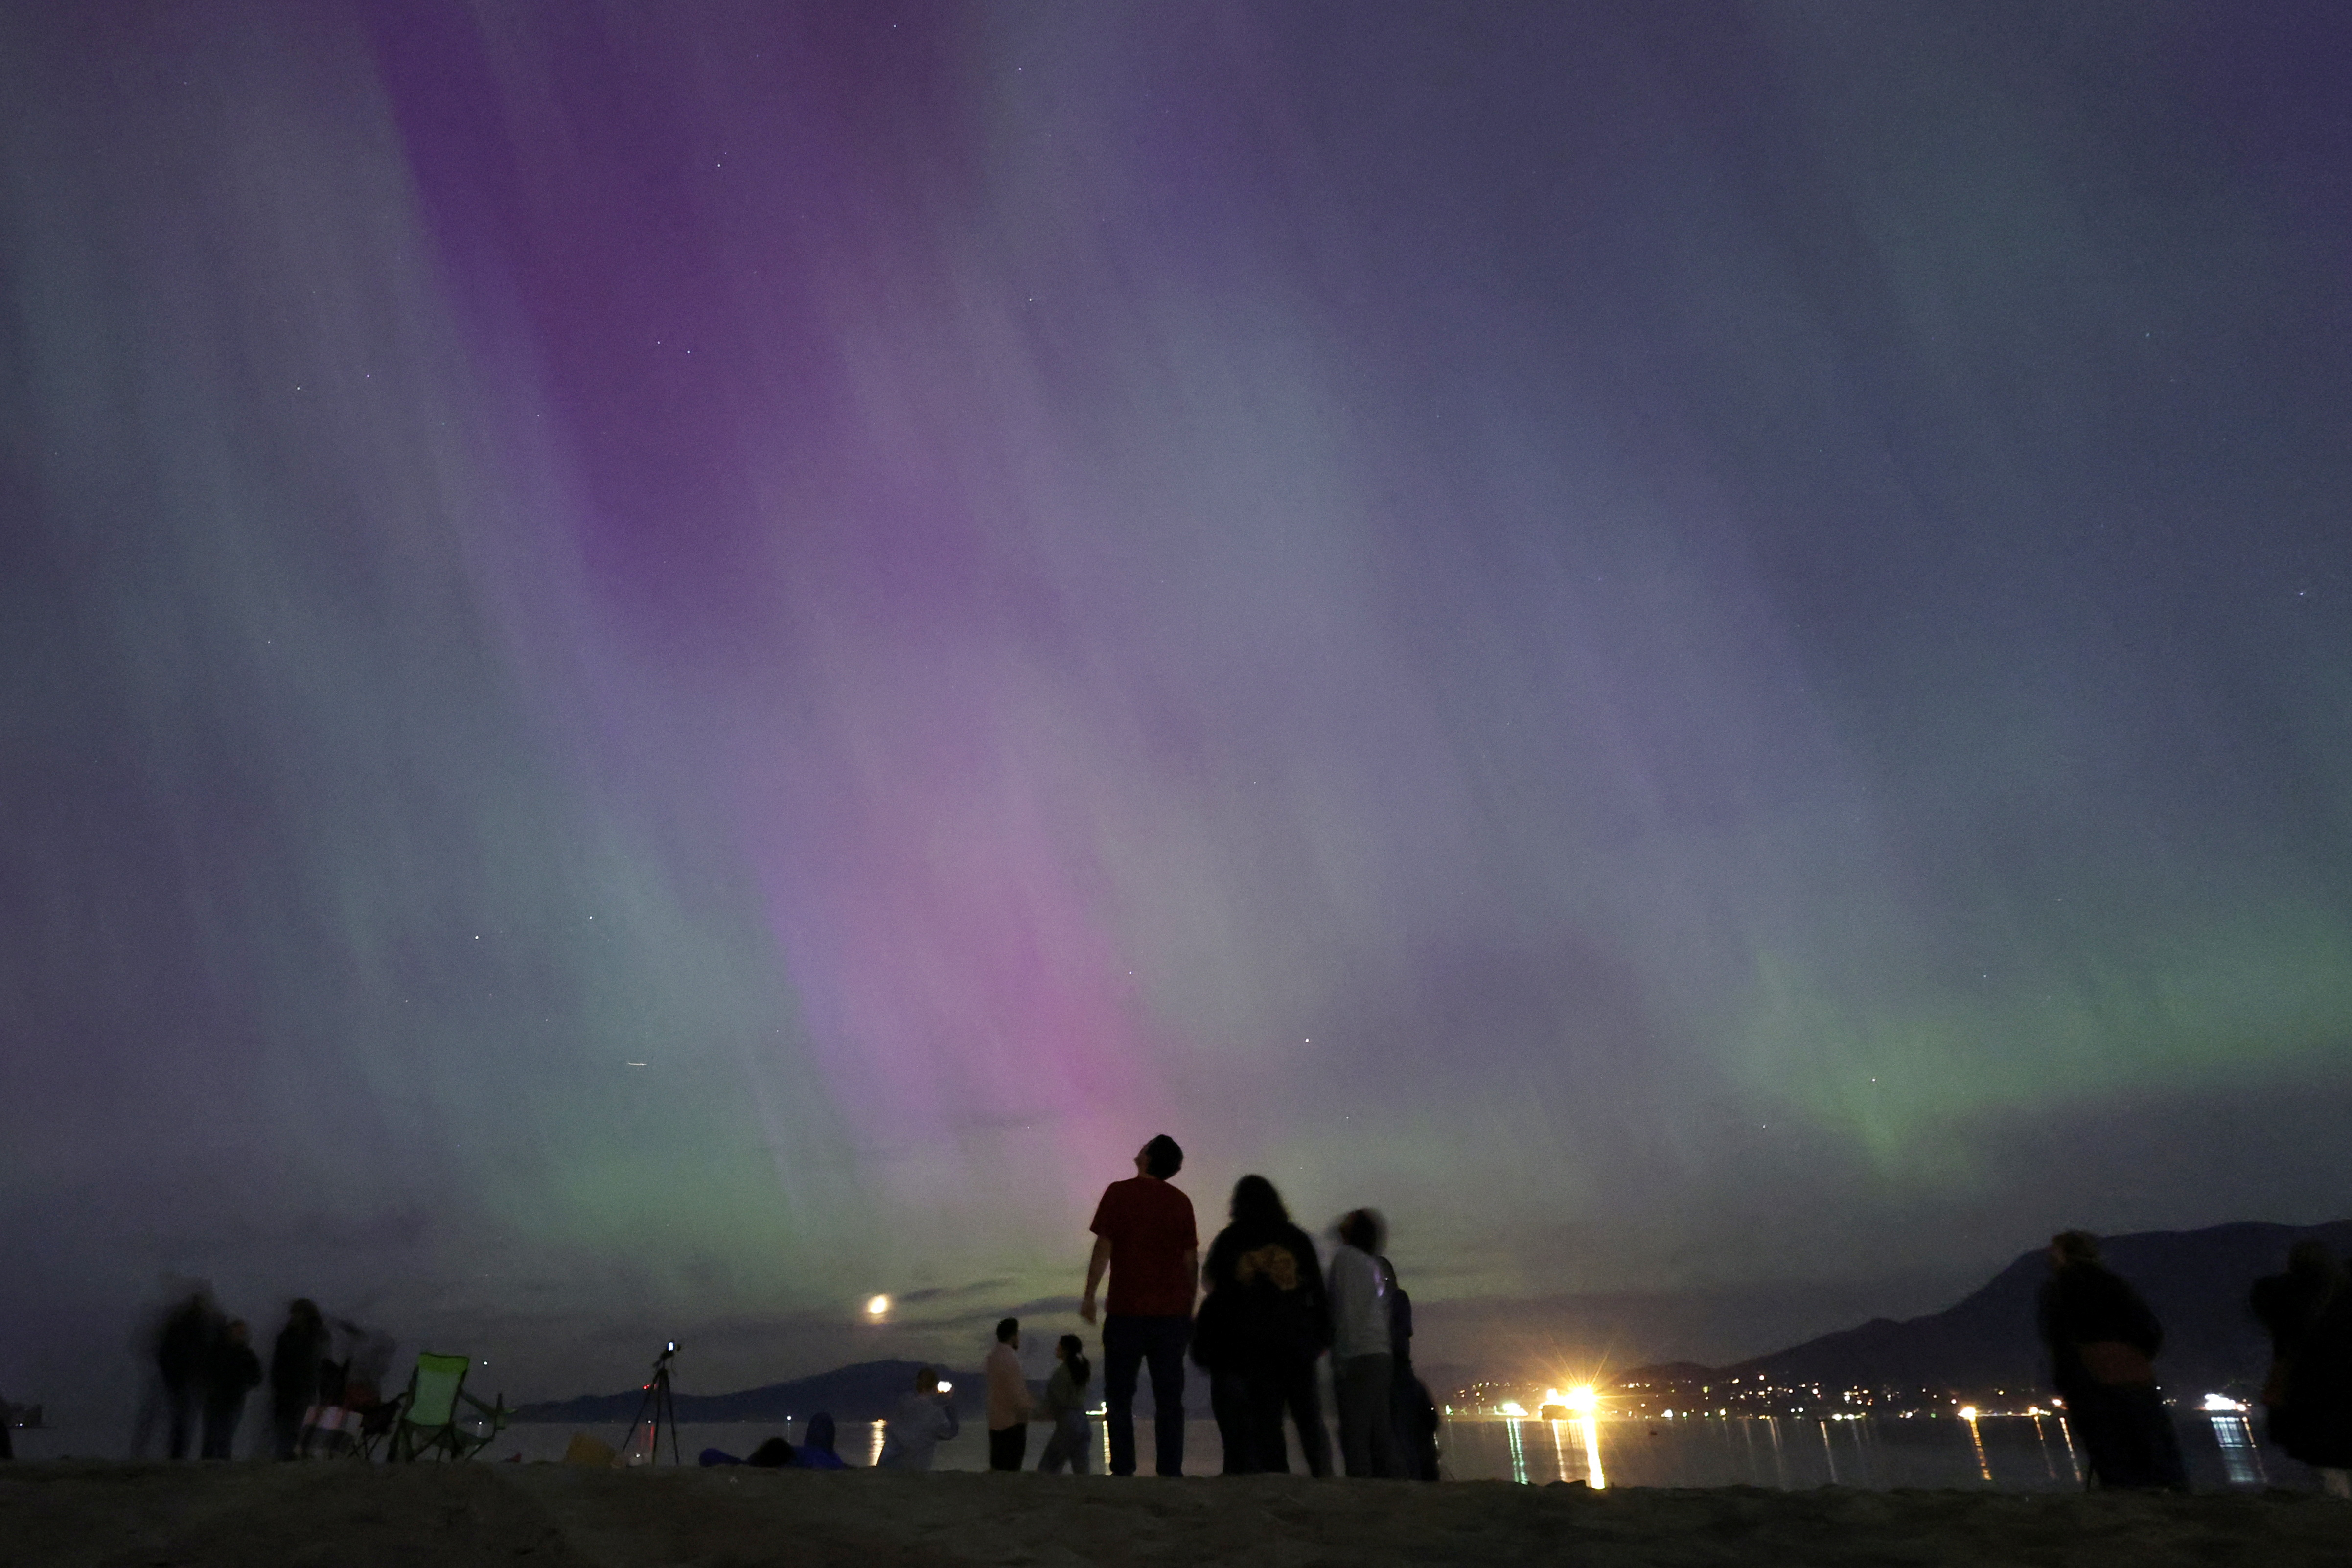 The aurora borealis, also known as the 